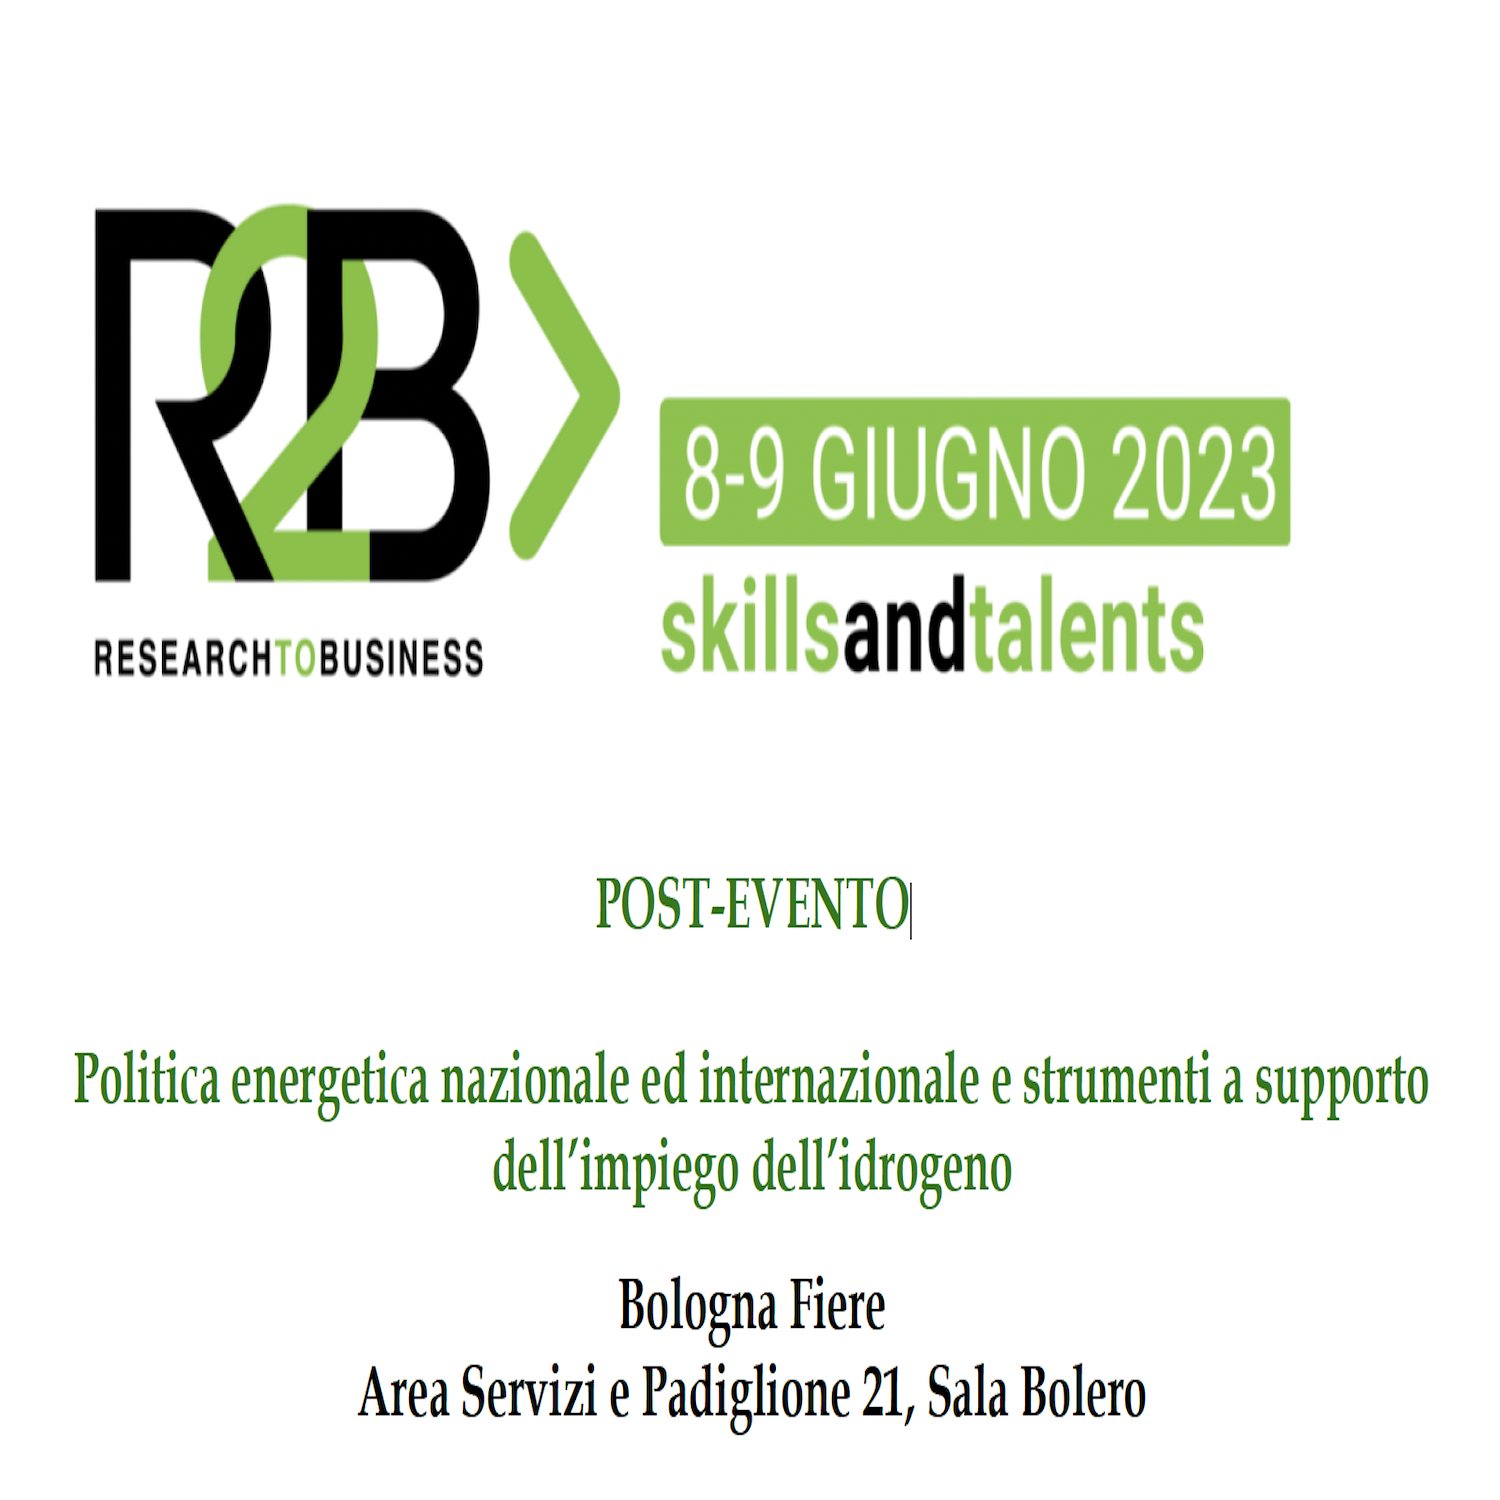 Post-Evento Politica energetica e strumenti a supporto dell’impiego dell’idrogeno – Salone R2B – 9 giugno 2023